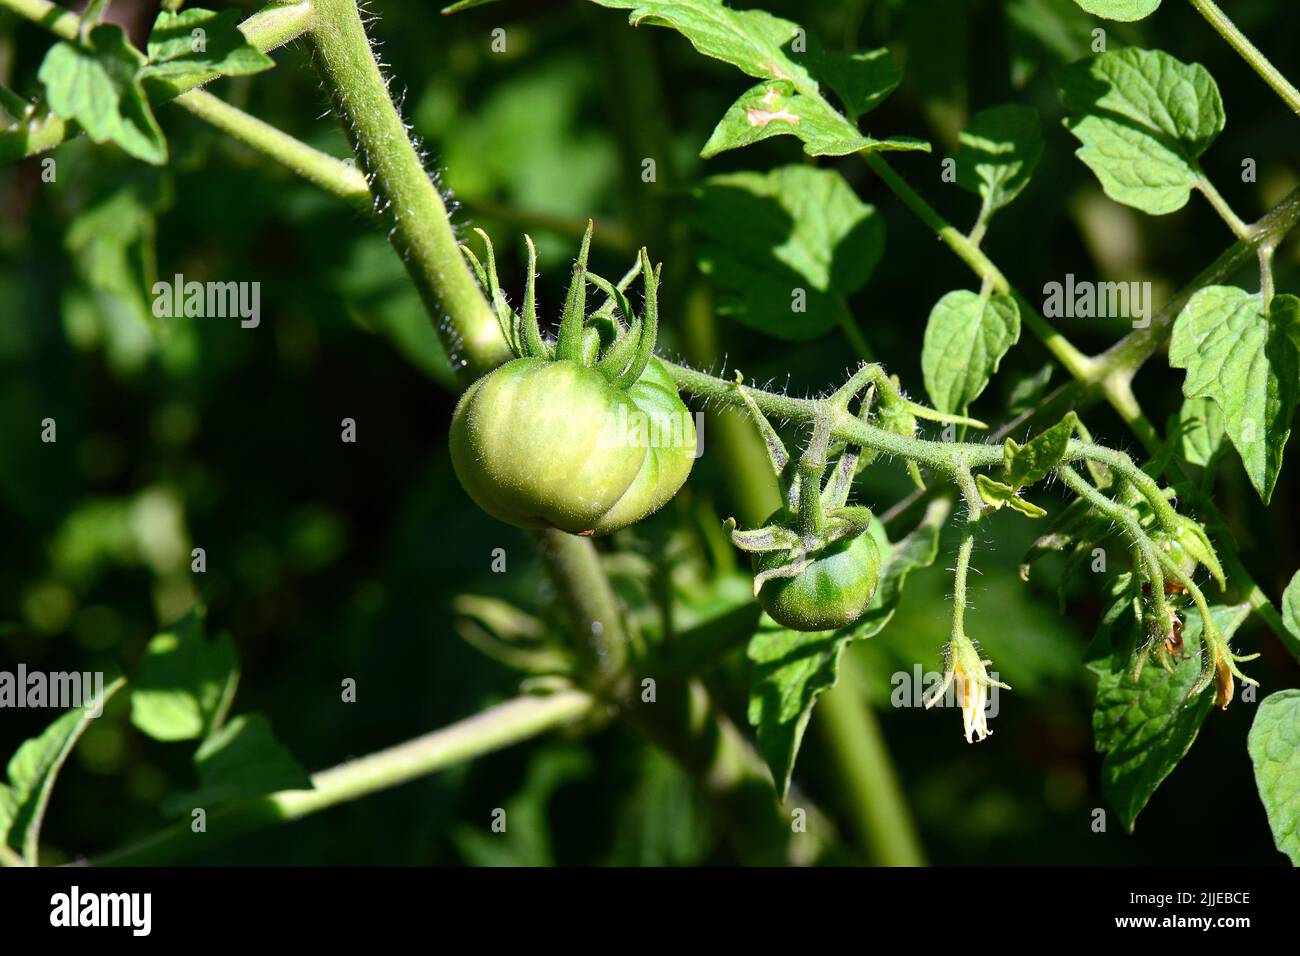 Tomato, Tomate, Paradeiser, Solanum lycopersicum, paradicsom, Budapest, Hungary, Magyarország, Europe Stock Photo